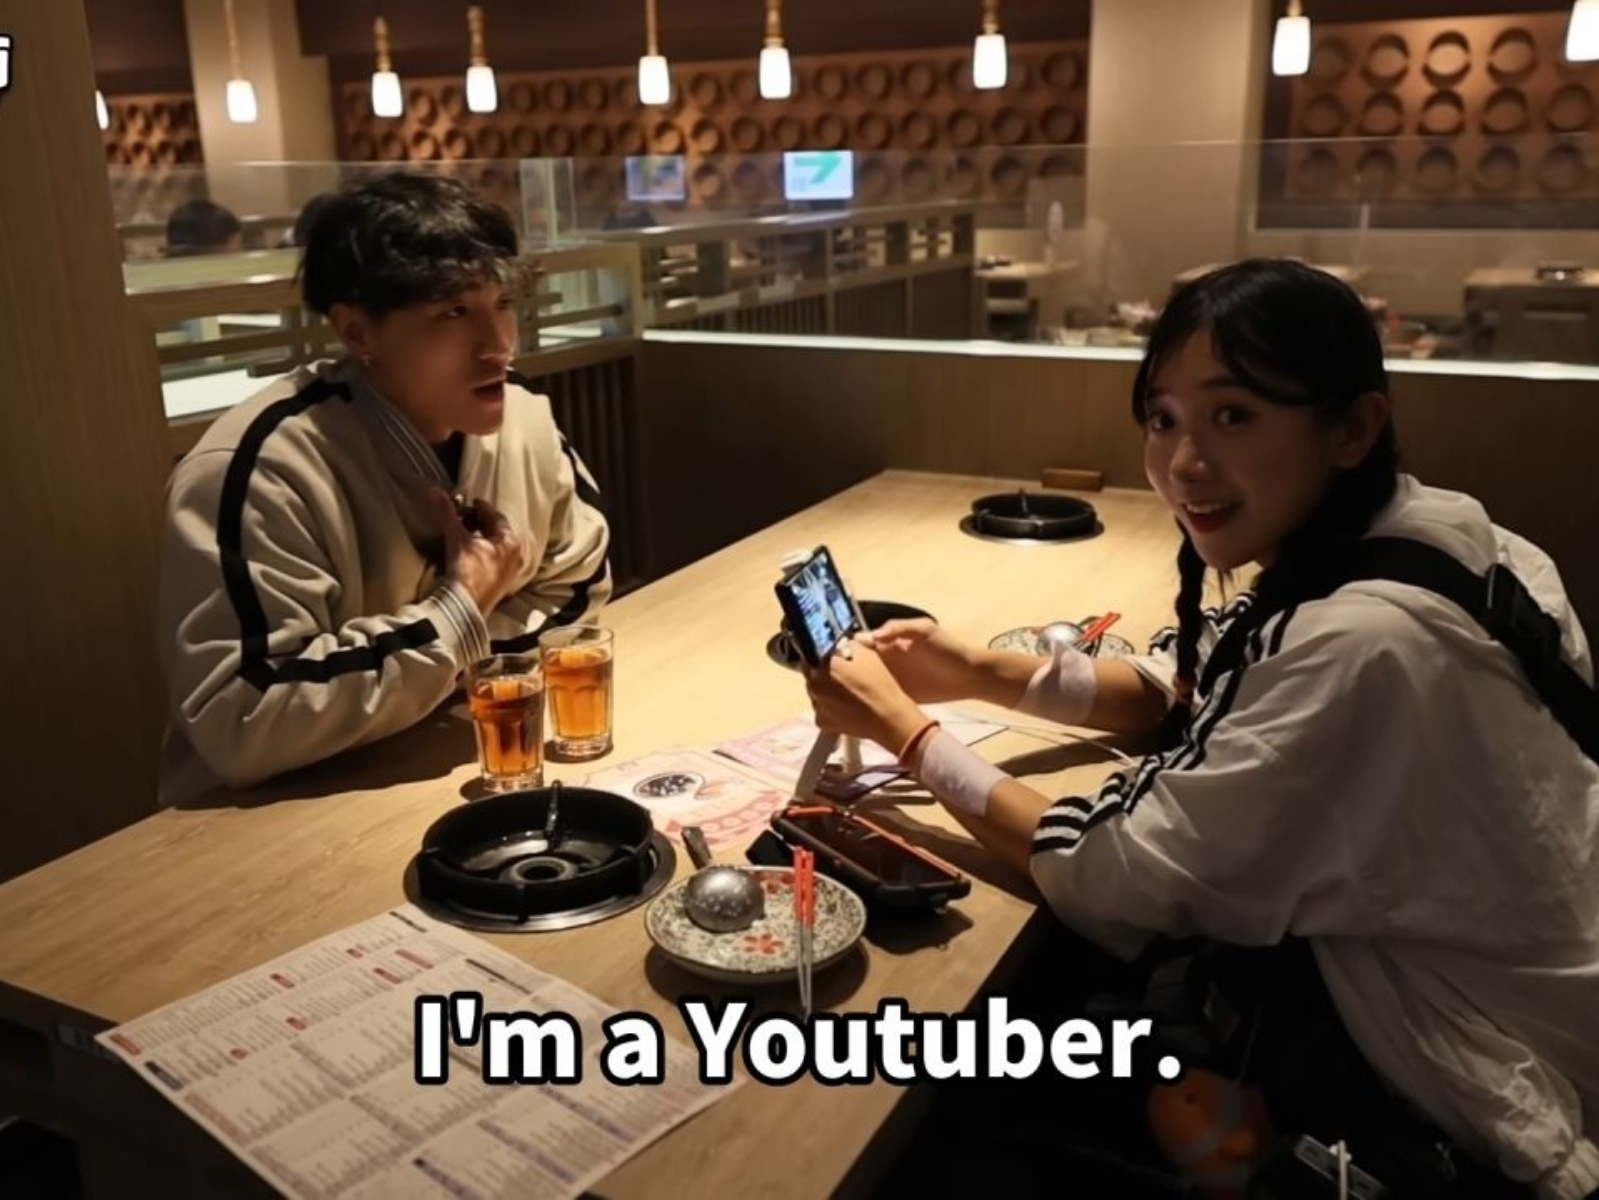 企鵝妹環島遇 YouTuber 唐突搭訕，「無禮行為」遭網友砲轟卻反嗆引熱議！